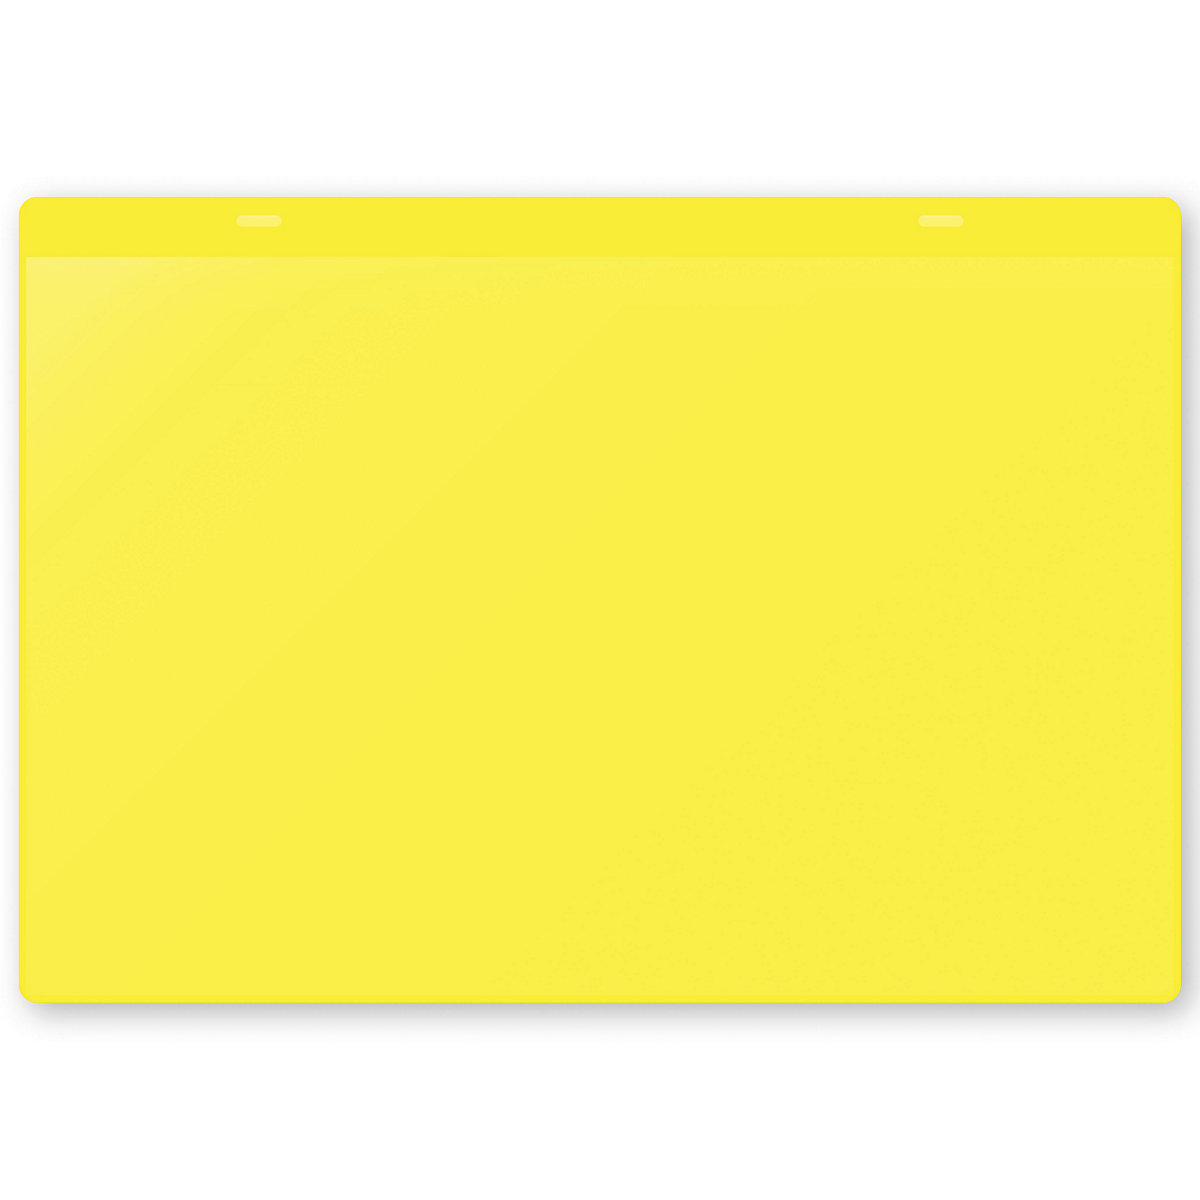 Dokumentumtartó tasakok akasztópánttal, DIN A4, fekvő, cs. e. 50 db, sárga